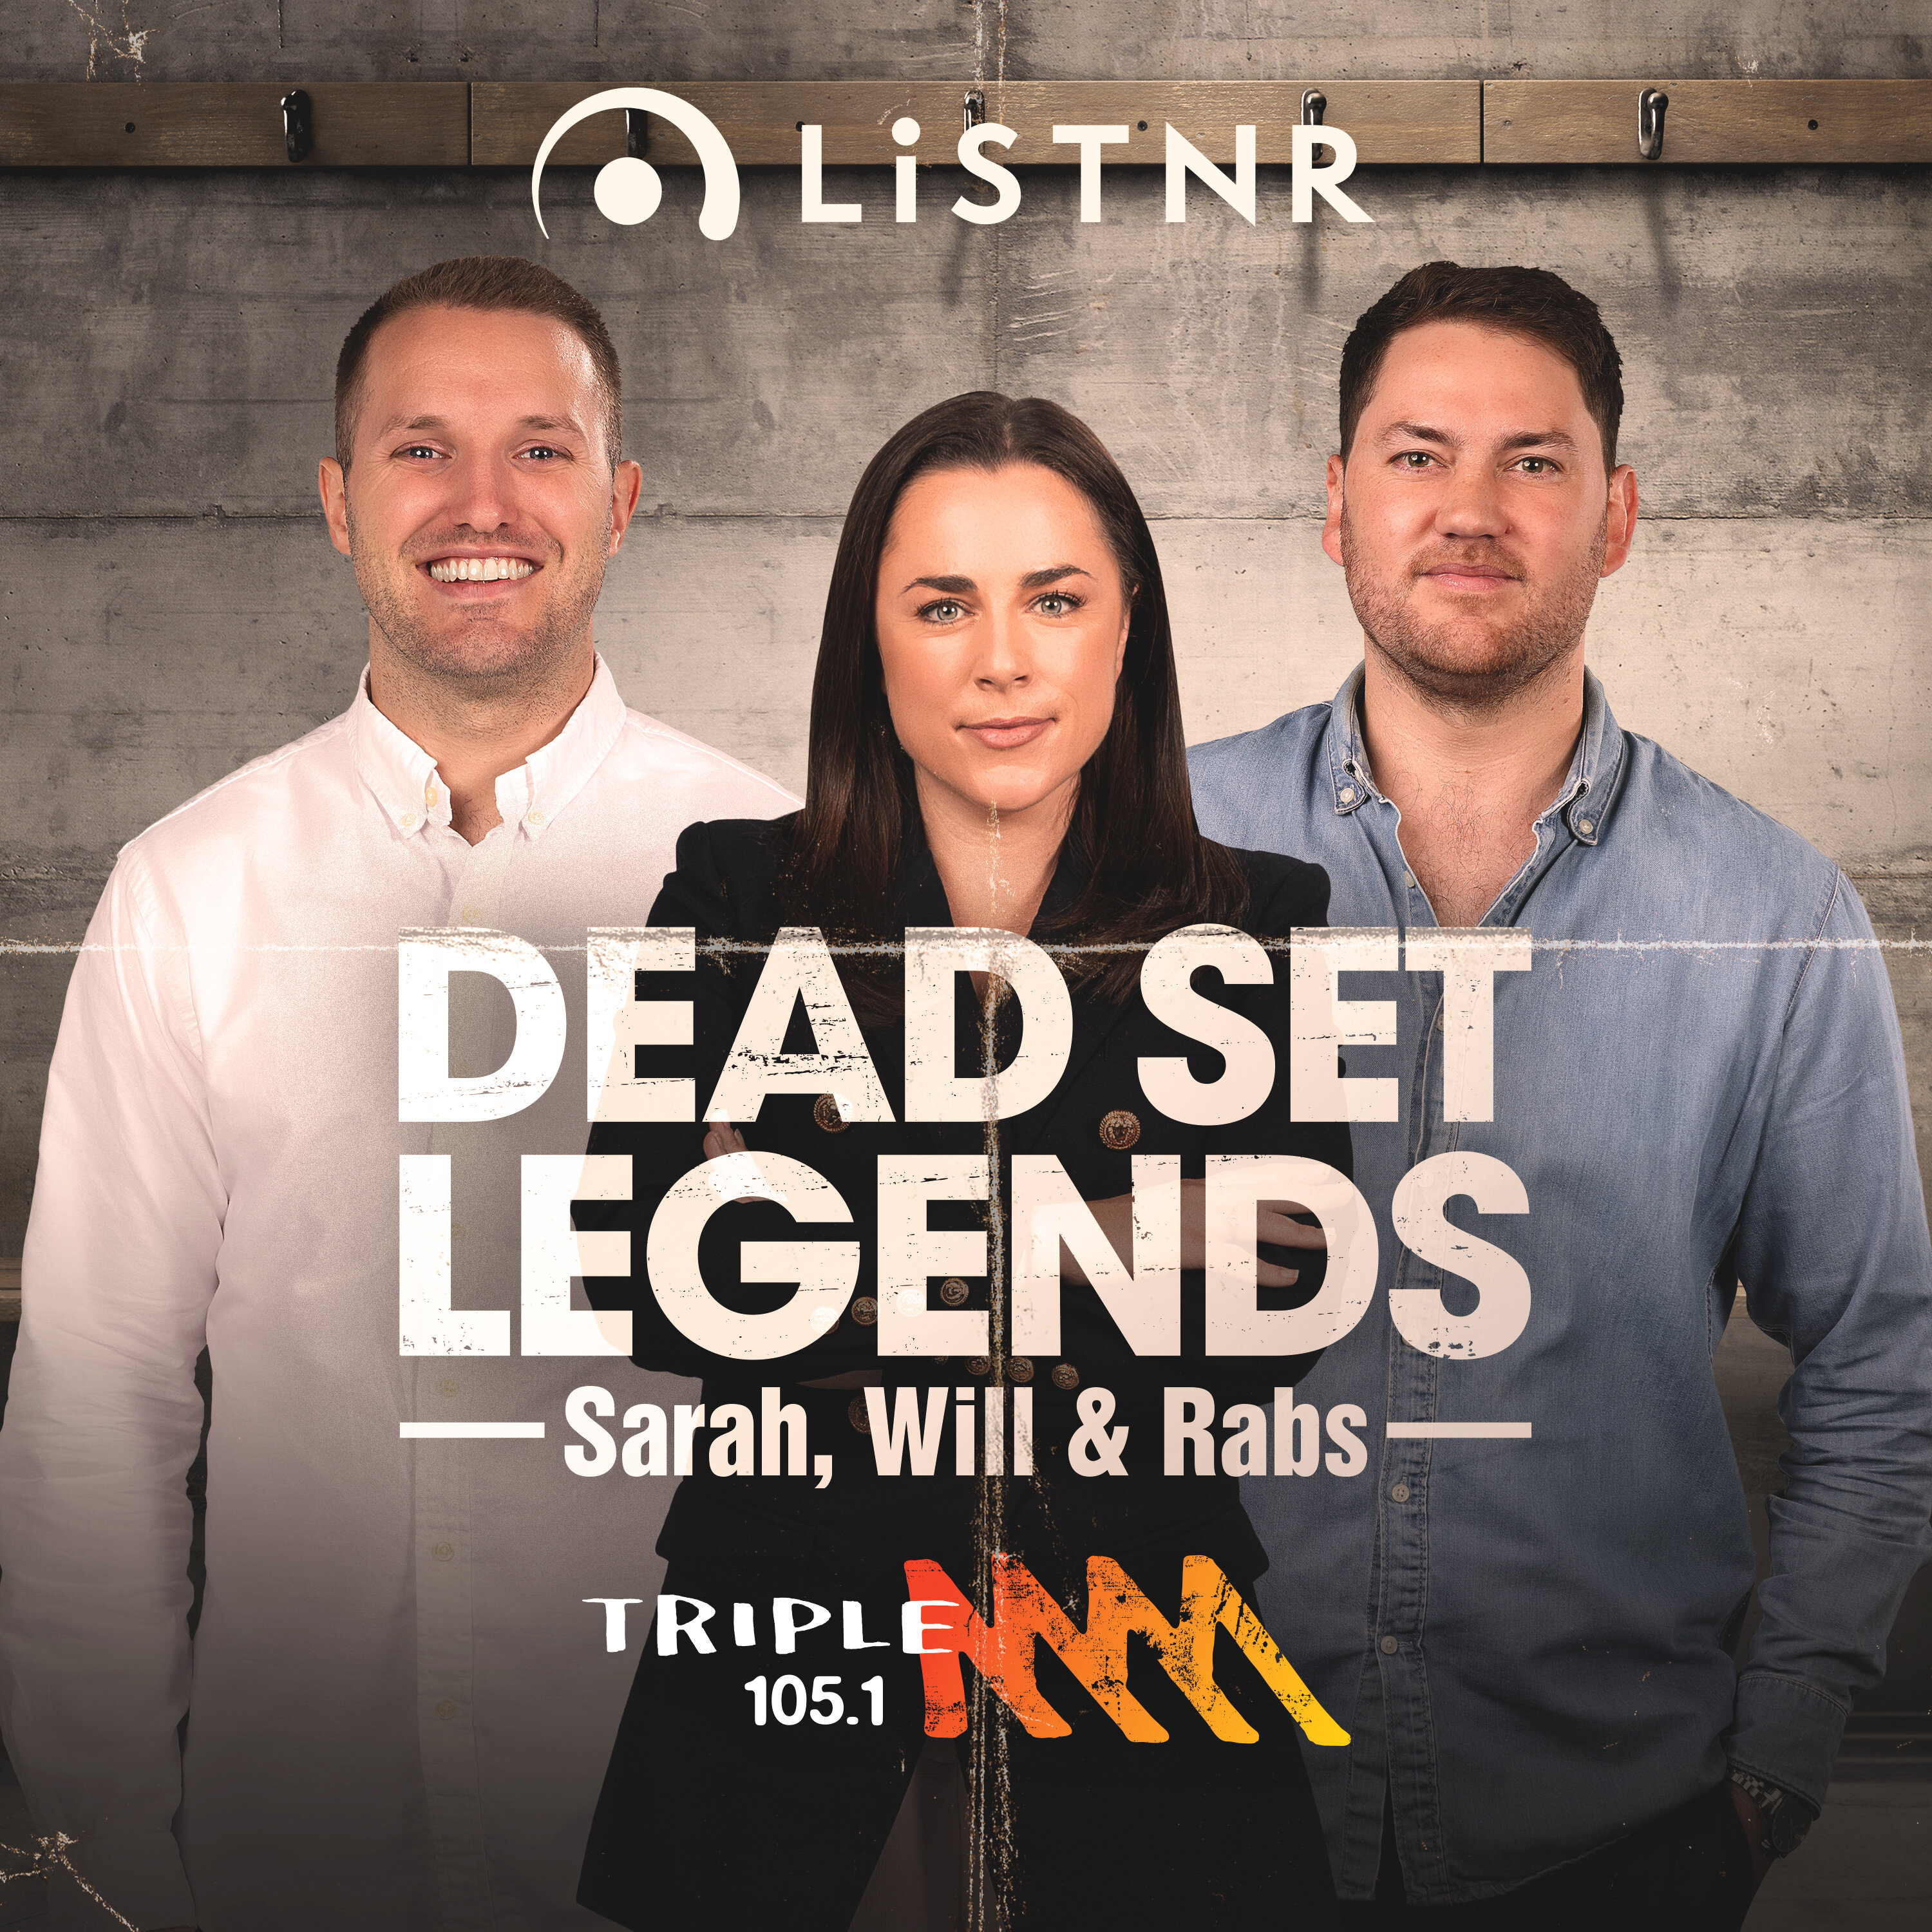 The Dead Set Legends Melbourne Catch Up - 105.1 Triple M Melbourne